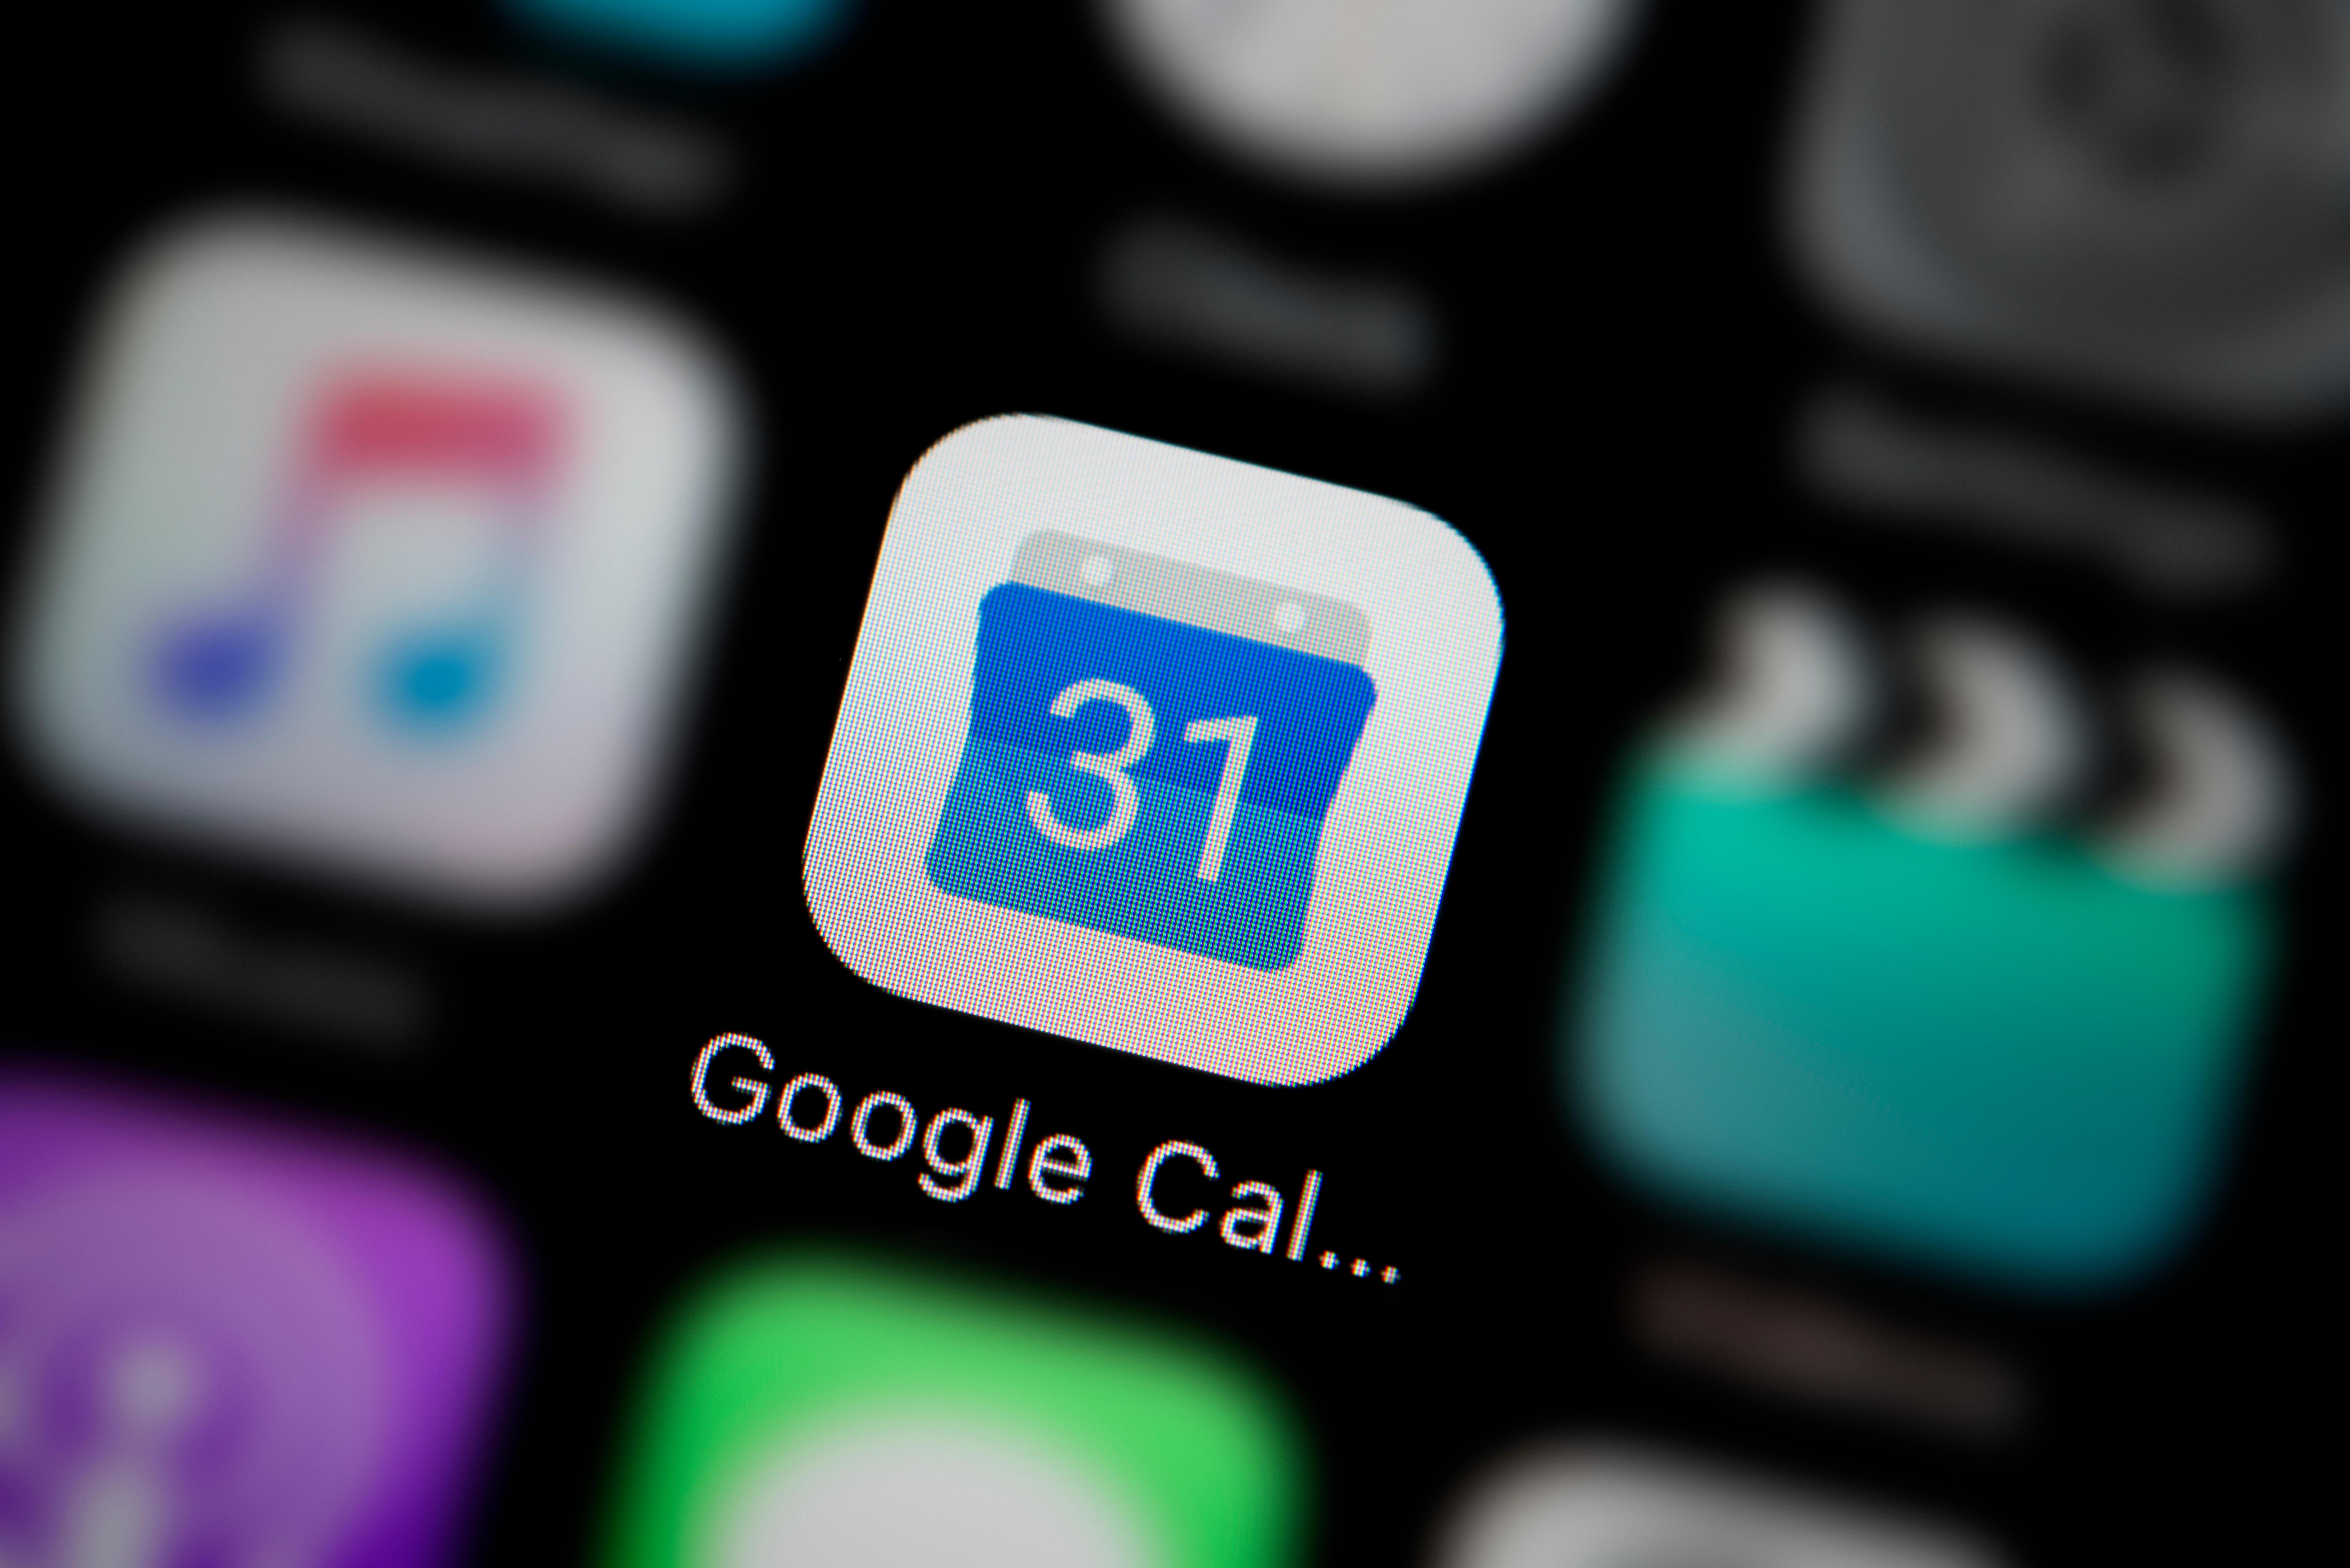   Один миллиард пользователей Календаря Google подвергся телефонной афере с приглашением